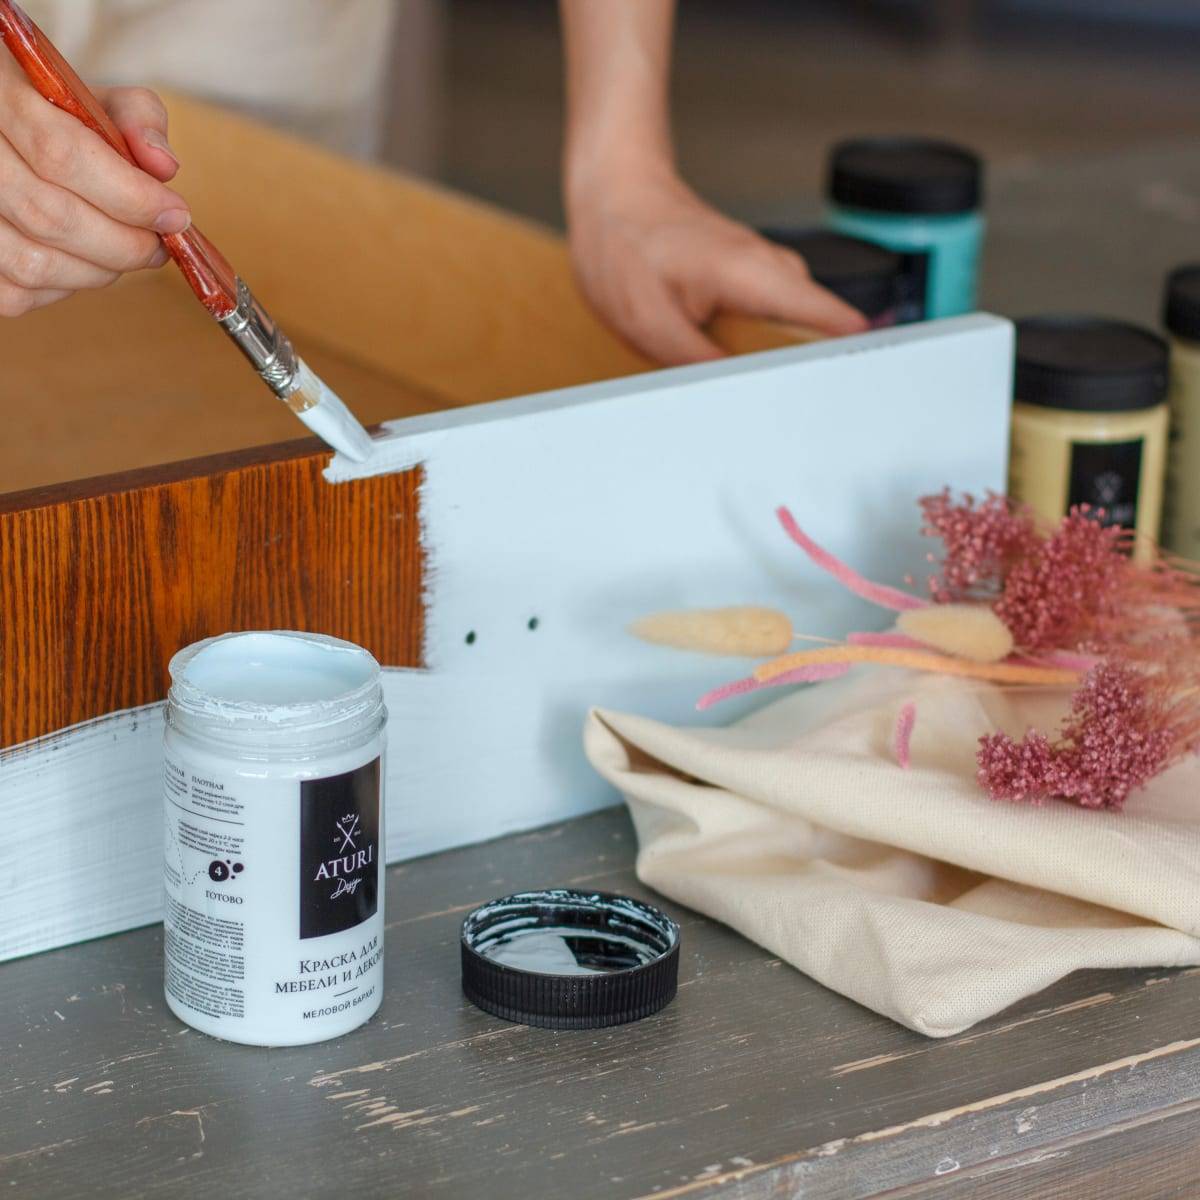 Как покрасить домашнюю мебель своими руками, состаривание мебели